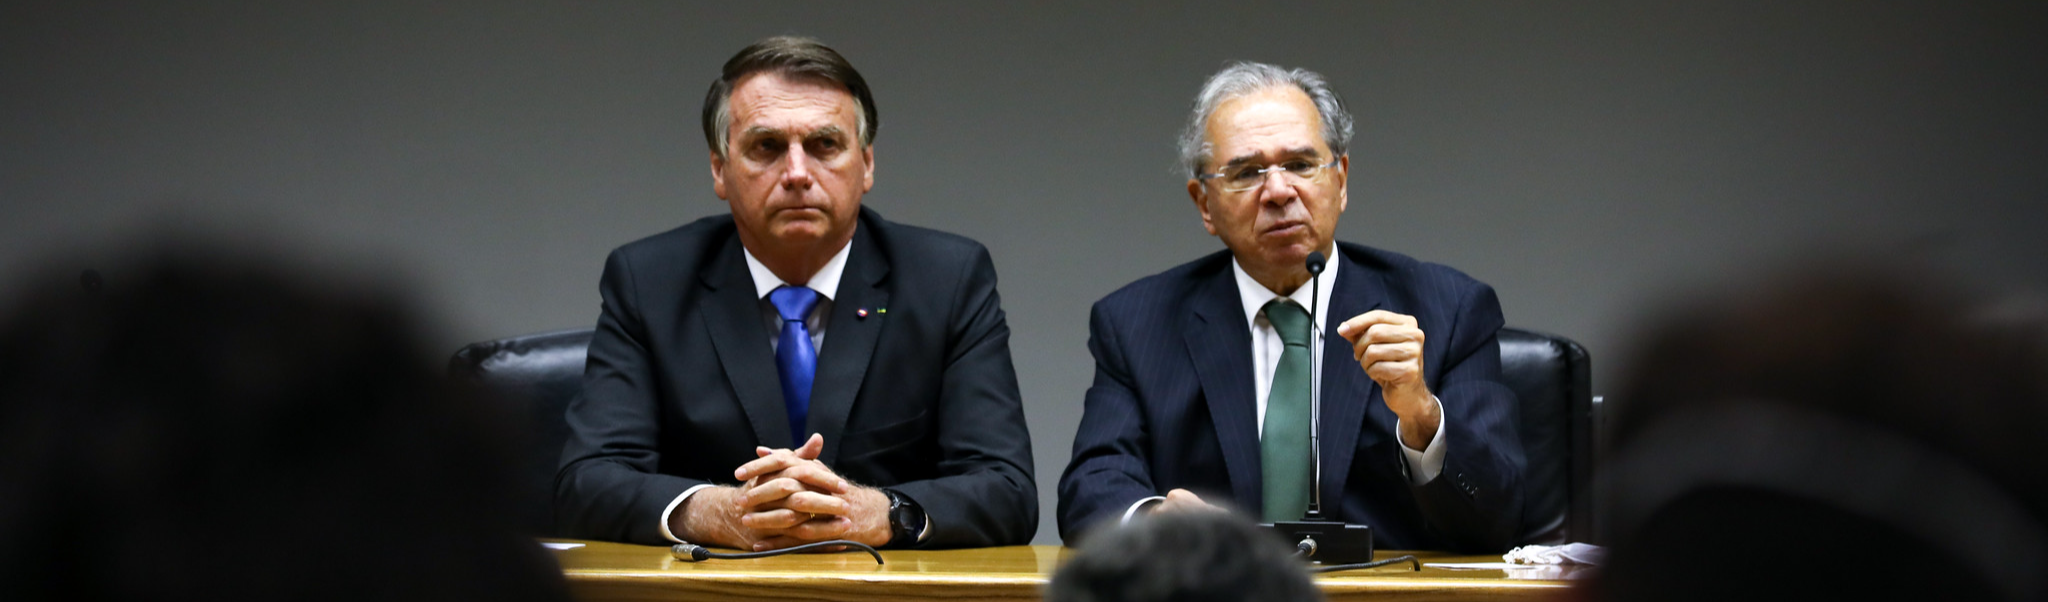 Por novo Bolsa Família, Bolsonaro rifa Guedes, mas visa reeleição e não combate a fome e a miséria